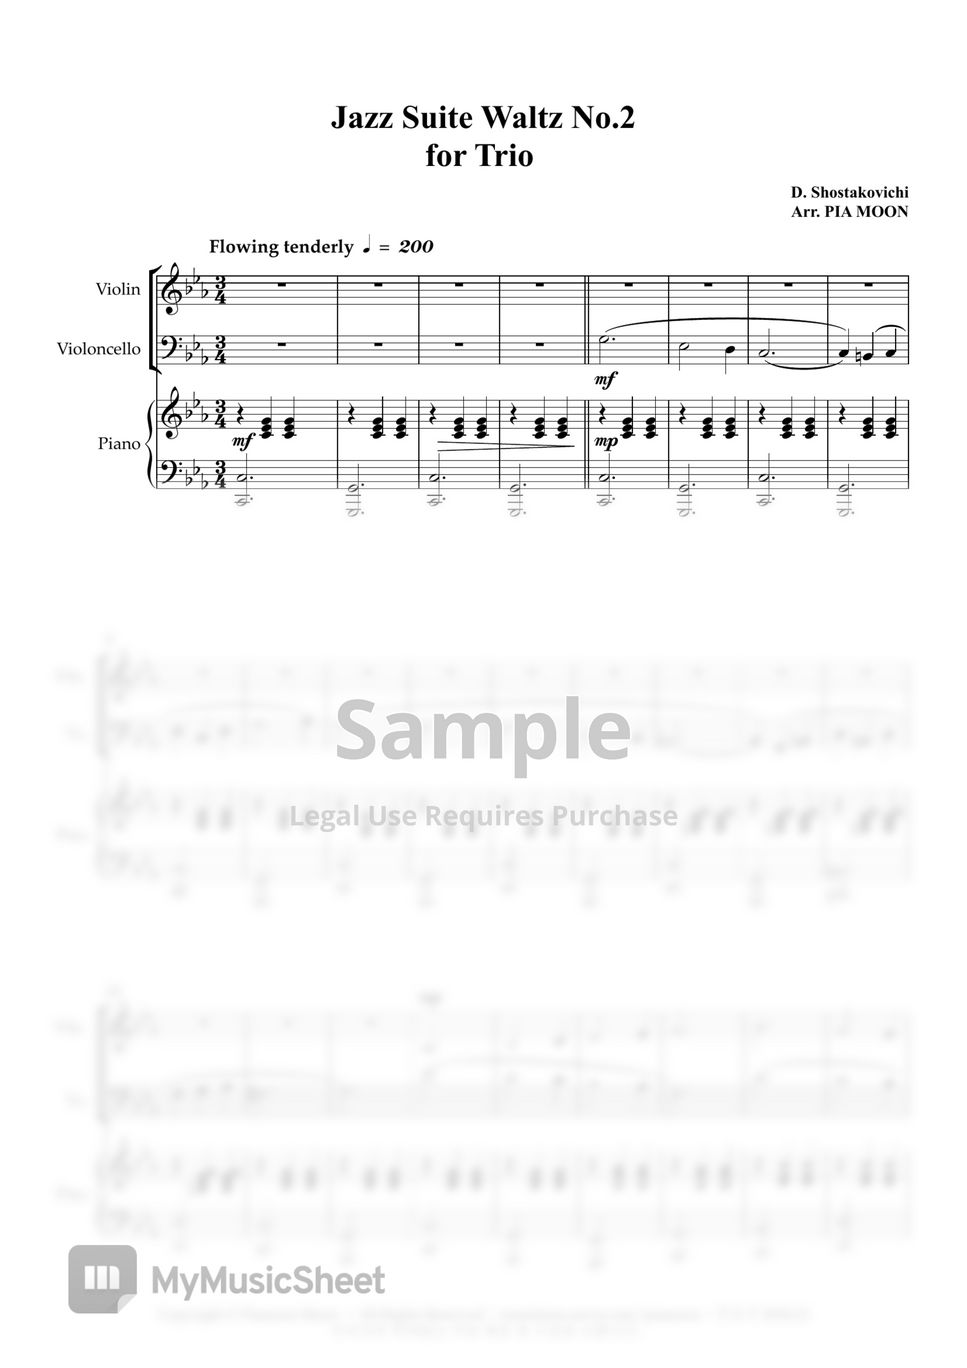 Shostakovich - Jazz Waltz No.2 (PIano Trio) by PIA MOON